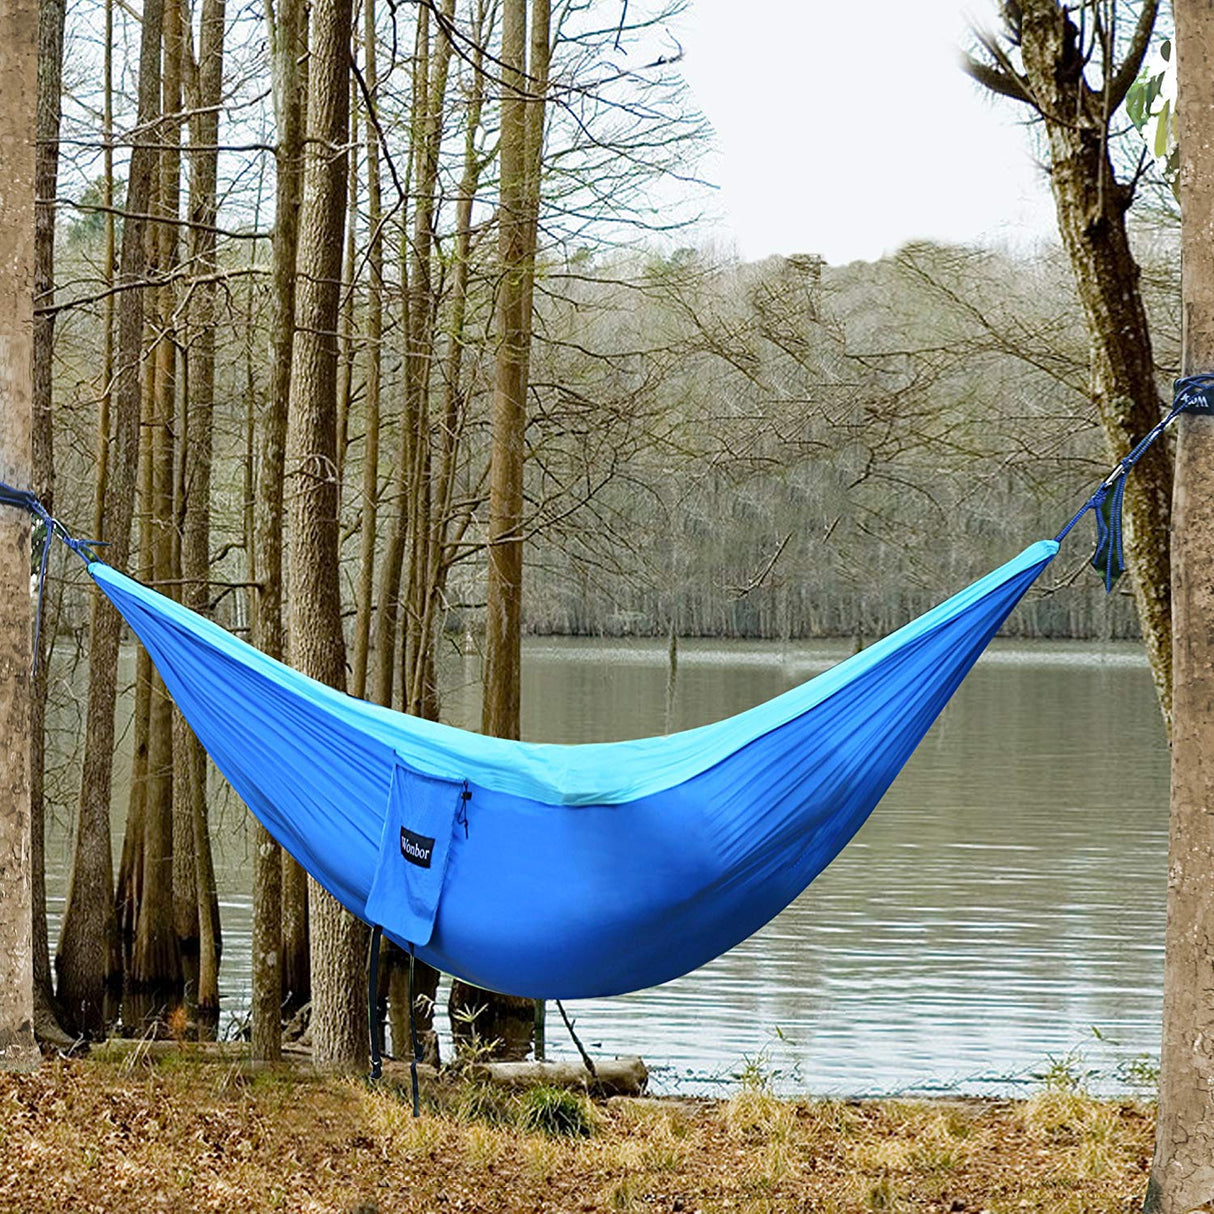 Cama de Rede em Nylon para Camping / Acampamento (Azul) - Multi4you®